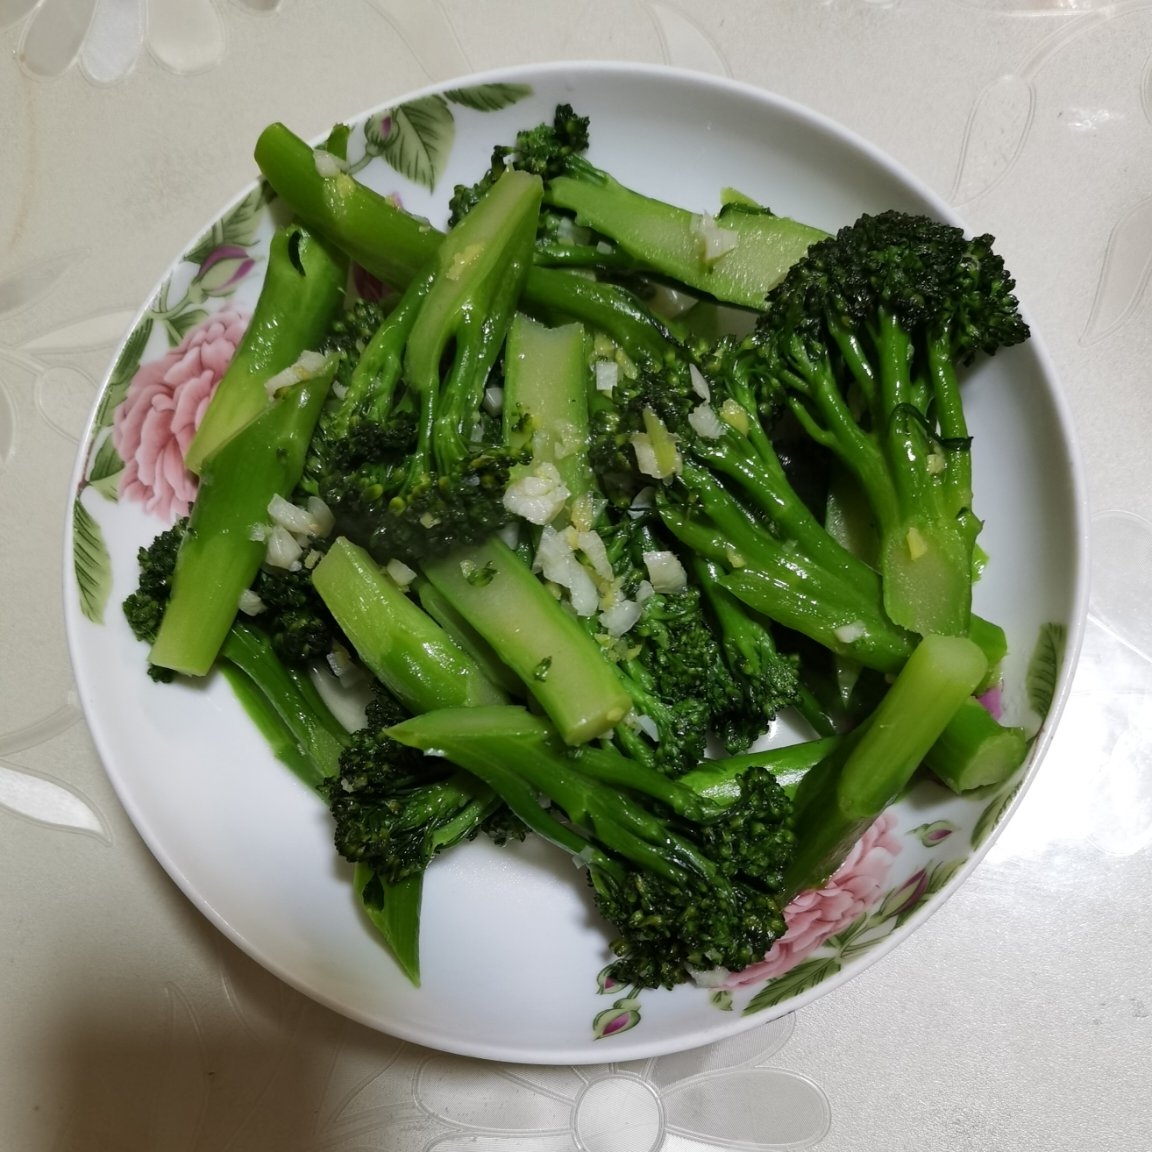 Costco煮易123 | 姜汁蒜蓉西兰花苗 Broccolini